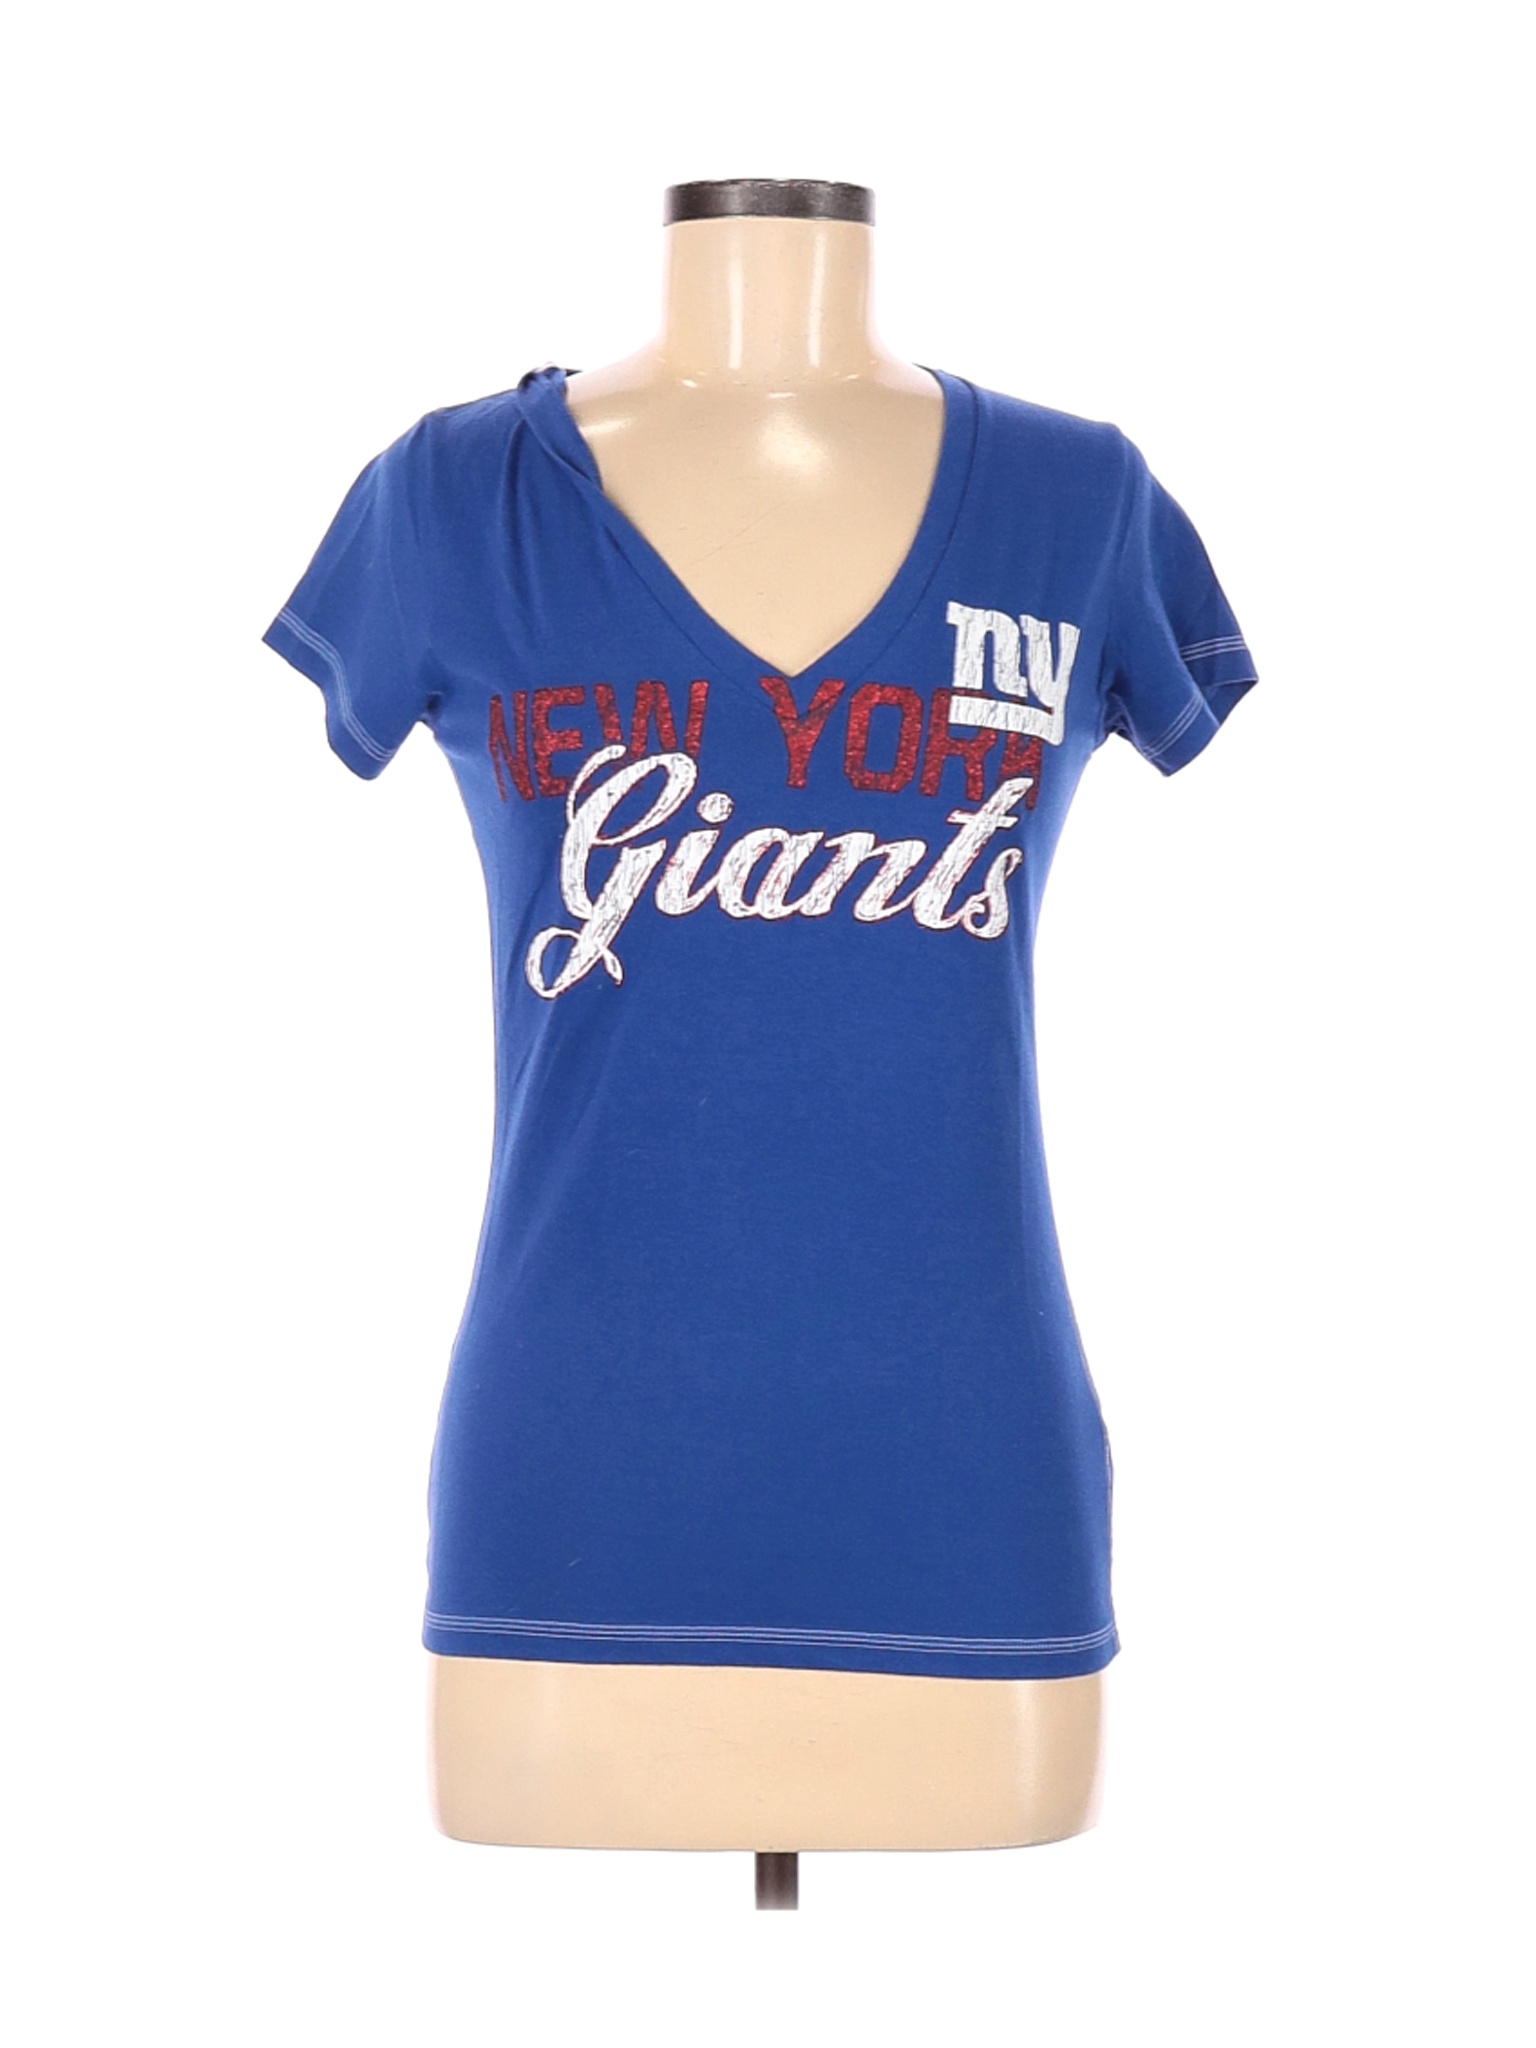 Team Apparel Women Blue Active T-Shirt M | eBay